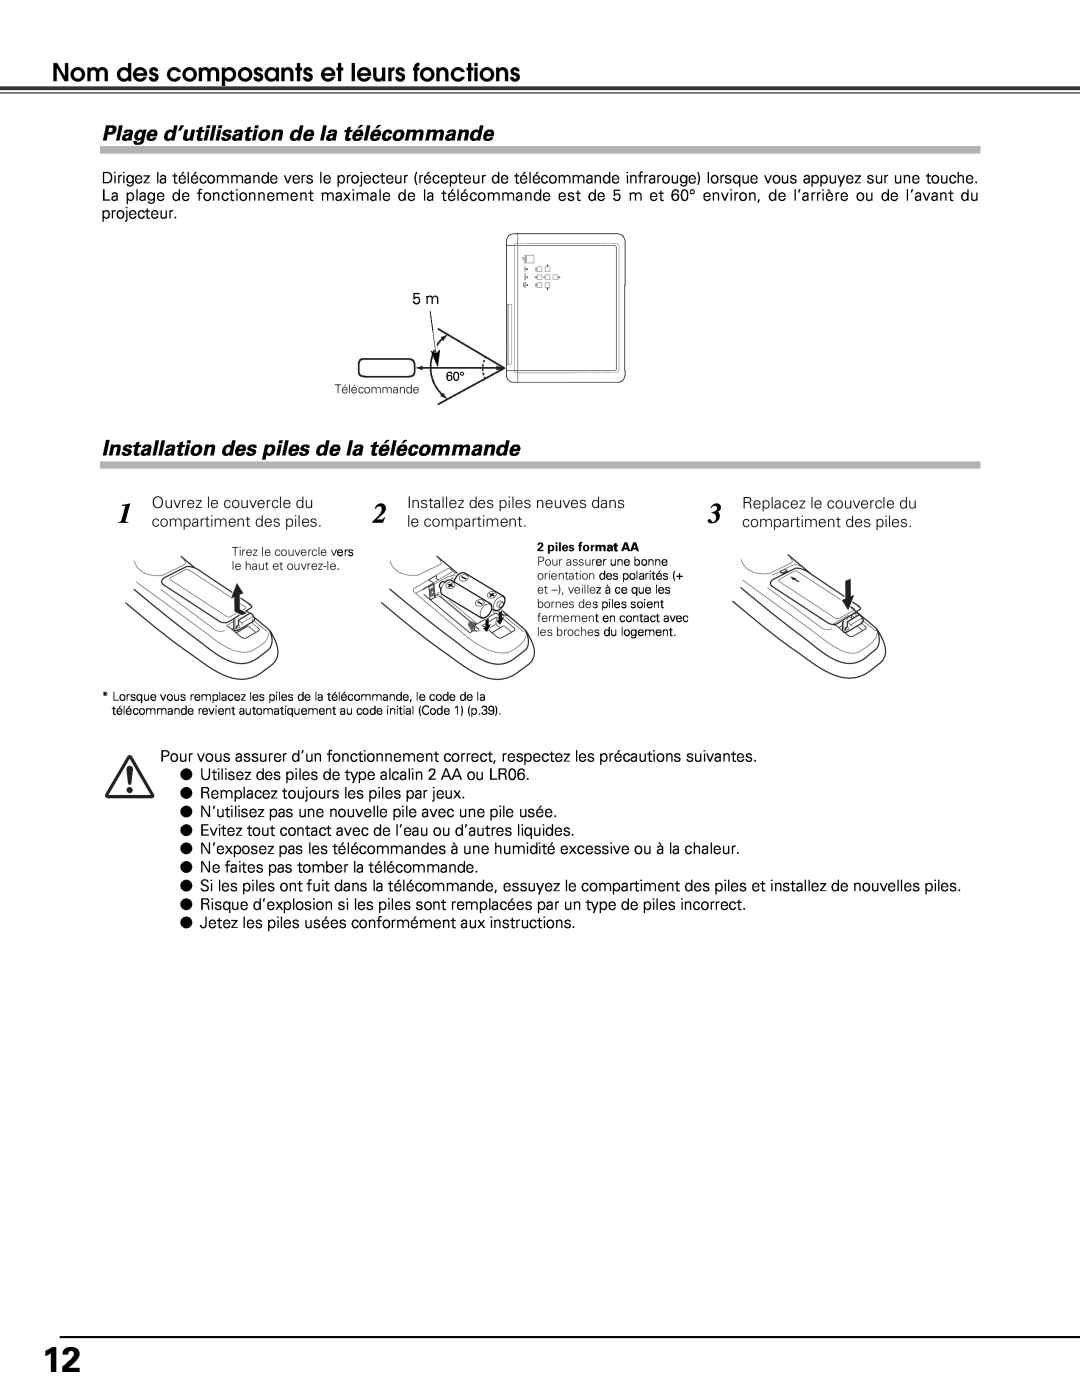 Sanyo PLV-Z5BK manual Plage d’utilisation de la télécommande, Installation des piles de la télécommande 